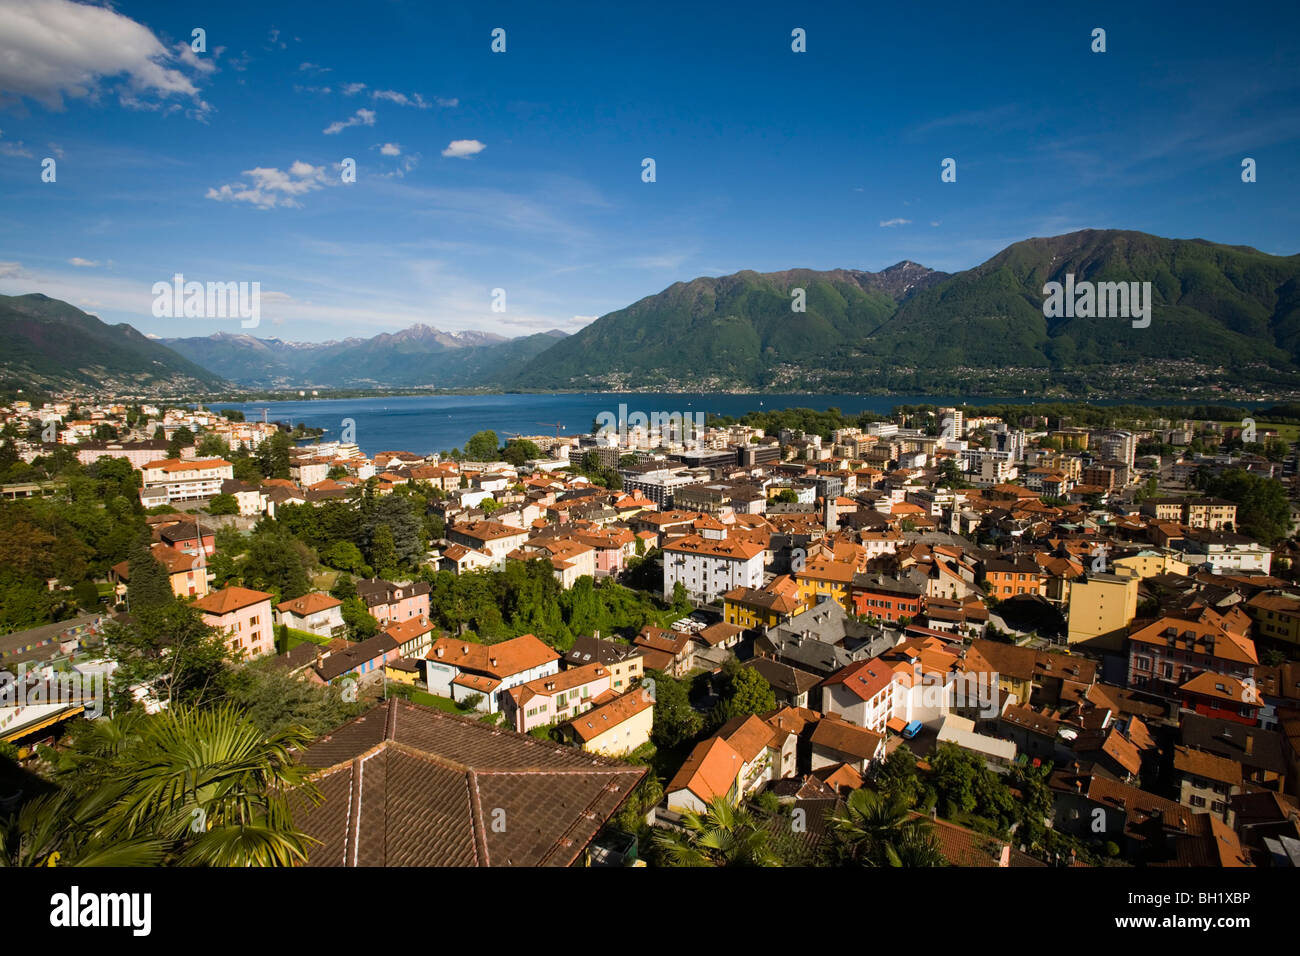 View over Locarno and Lake Maggiore, Ticino, Switzerland Stock Photo